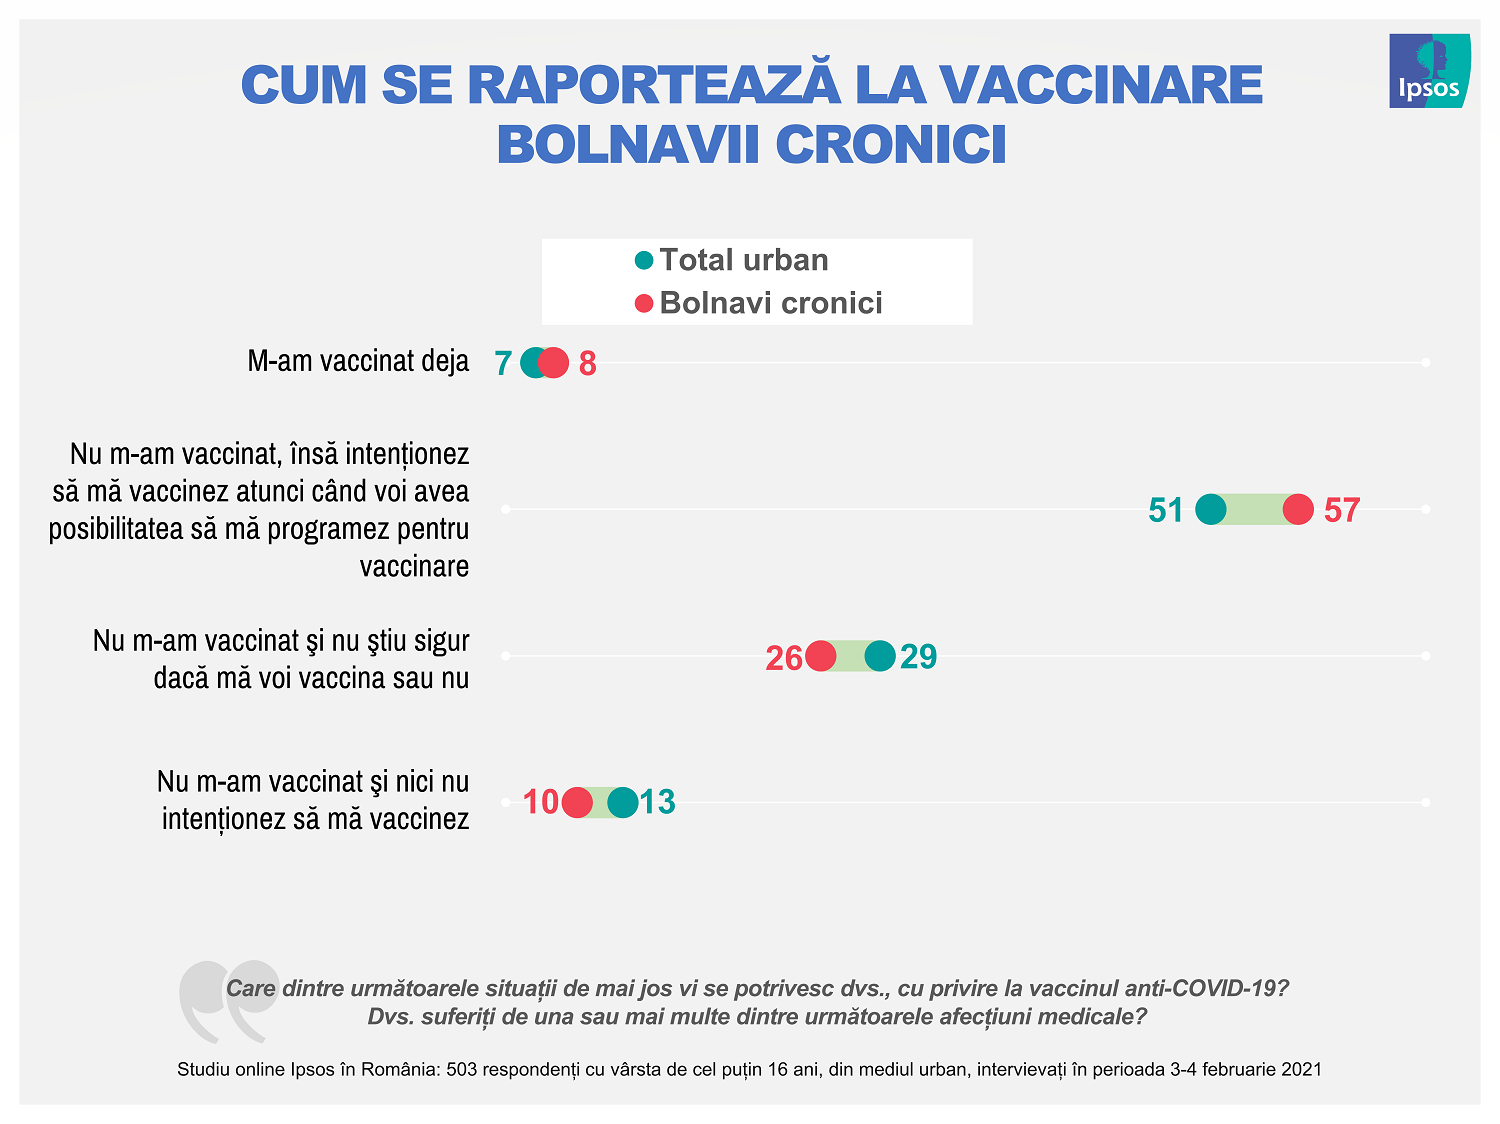  Infografie Ipsos_03_Cum se raportează la vaccinare bolnavii cronici